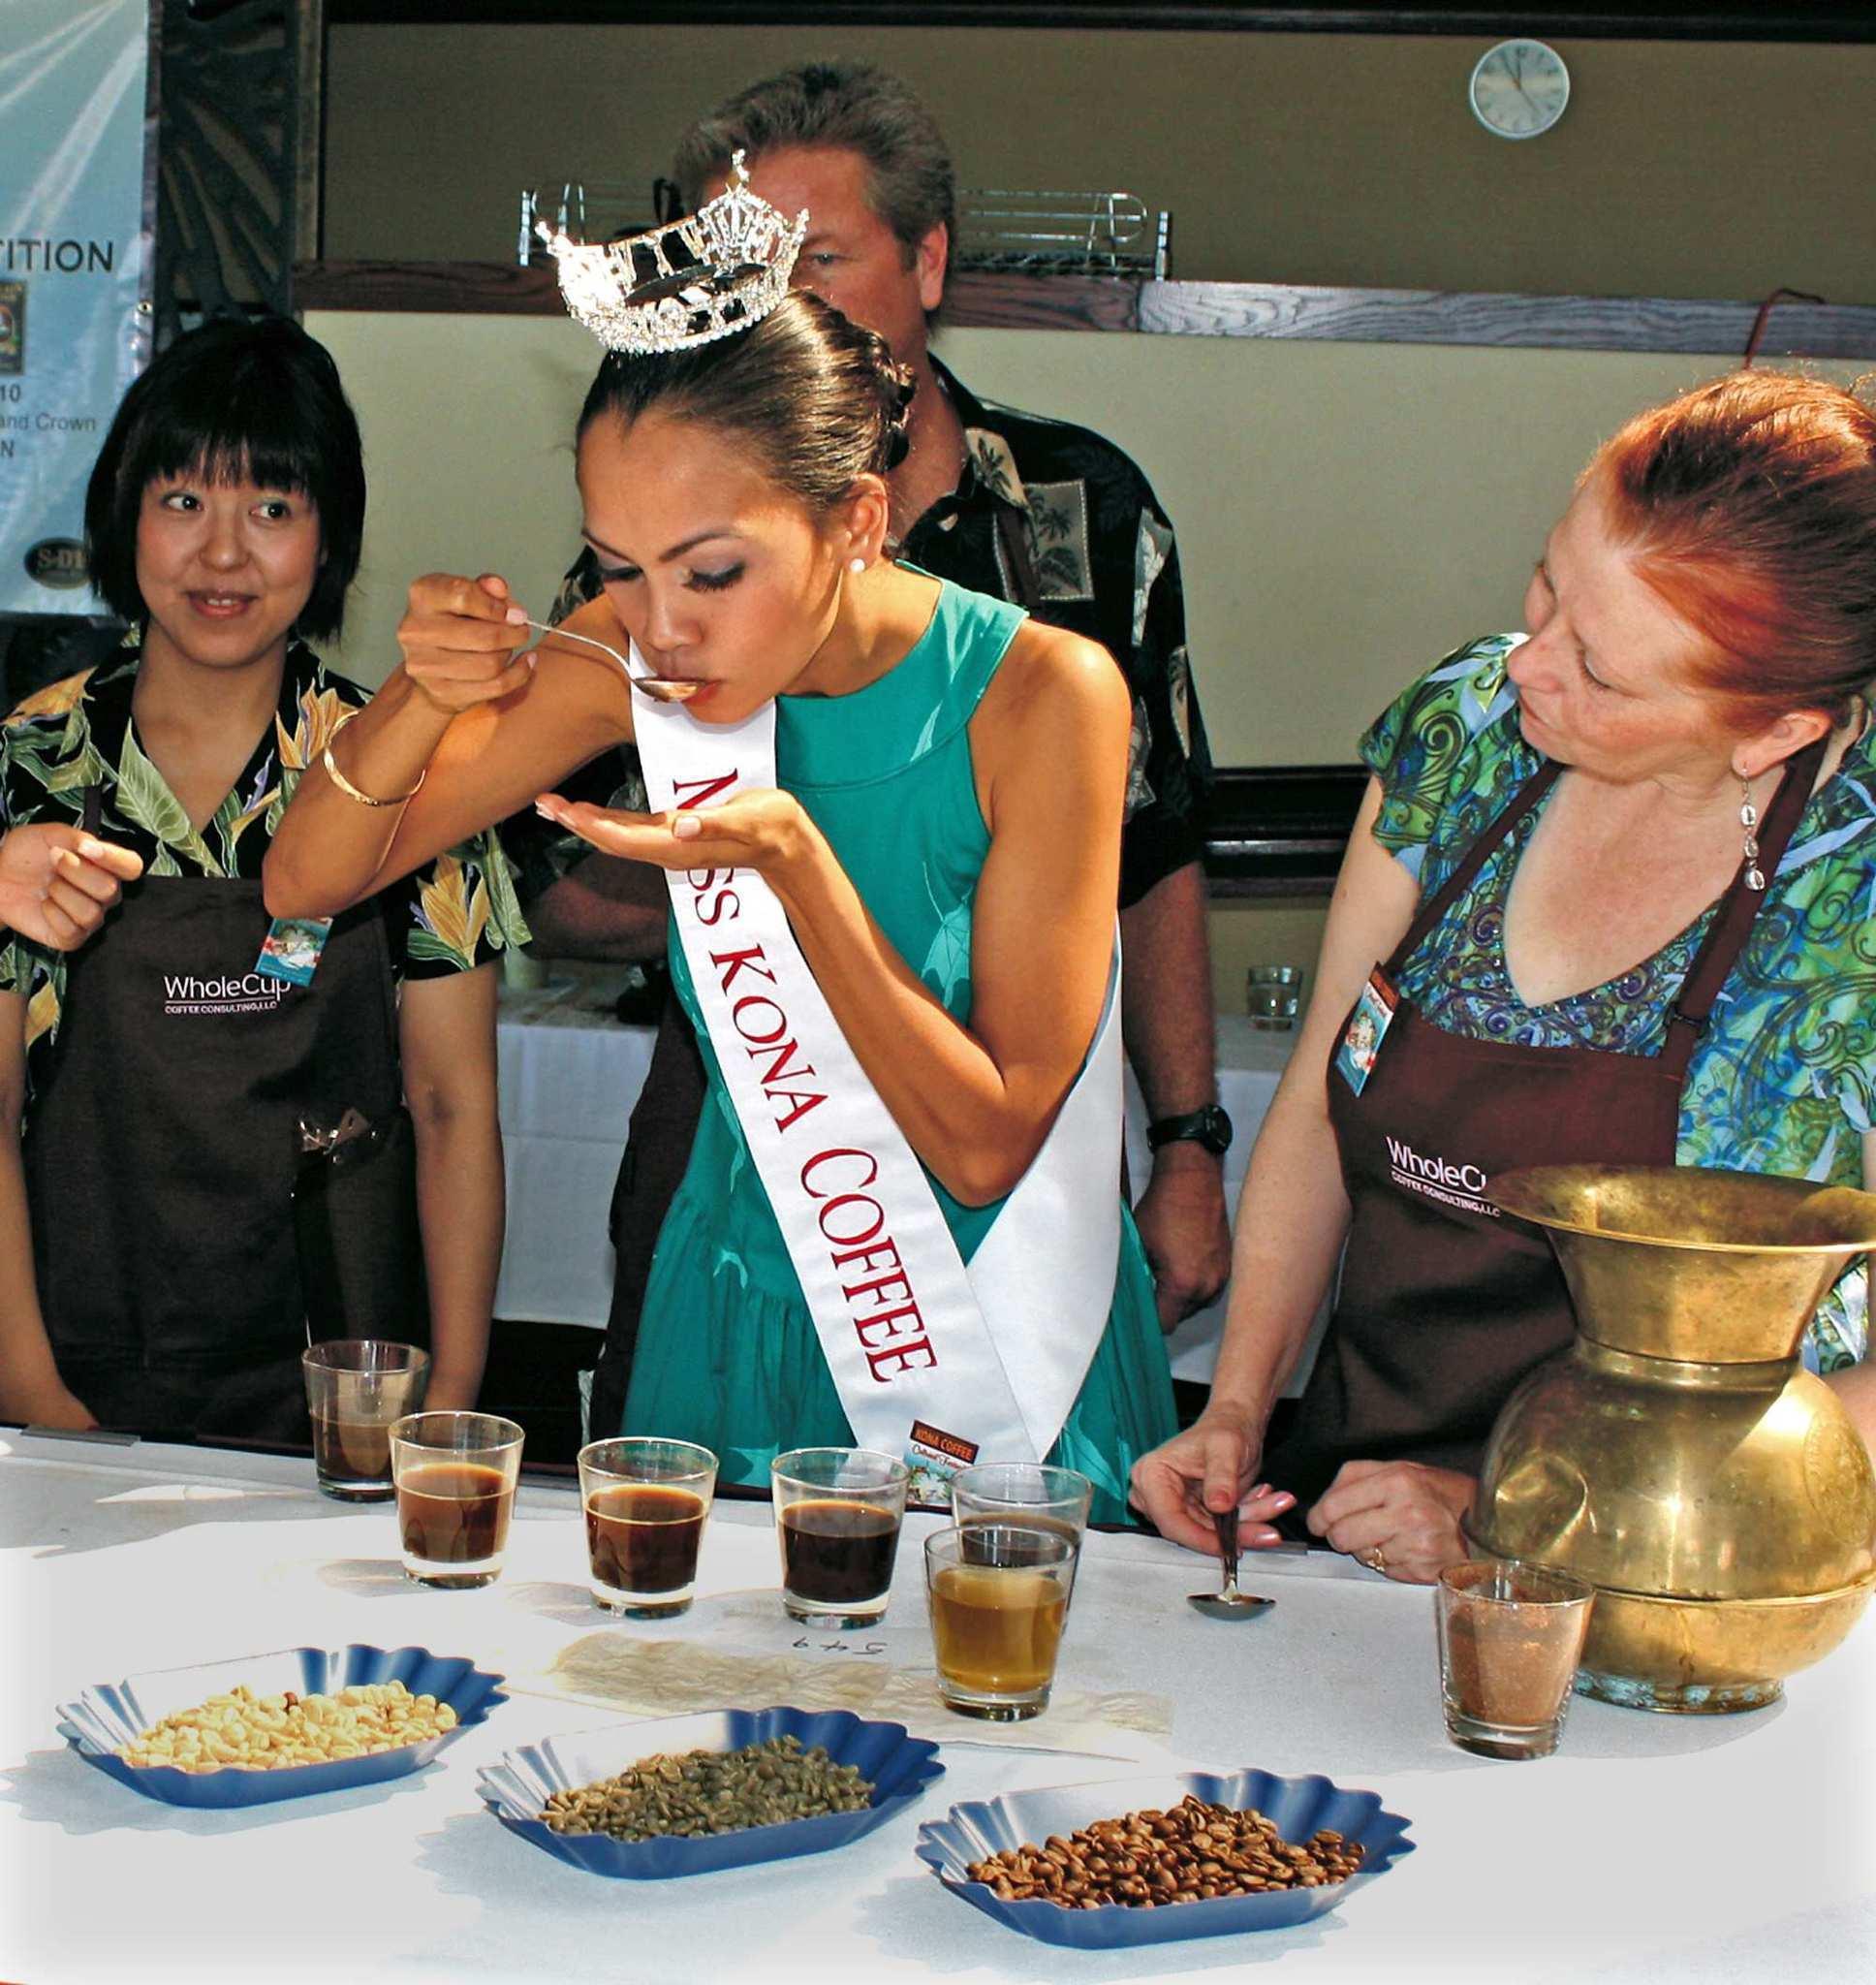 Lễ hội văn hóa cà phê Kona (Hawaii): Bạn có thể nếm thử cà phê Kona trong chuỗi các cửa hàng Starbucks, tuy nhiên hãy luôn rằng cà phê Kona ngay chính tại quê hương của nó – hòn đảo Hawaii xinh đẹp mới thực sự cho bạn cảm giác như trên thiên đường. Lễ hội văn hóa cà phê Kona không chỉ đơn thuần giới thiệu các loại cà phê Kona nổi tiếng khắp năm châu và còn tổ chức các hoạt động đa dạng khác như nếm thử cà phê, diễu hành, thi pha cà phê hay trình diễn người đẹp.